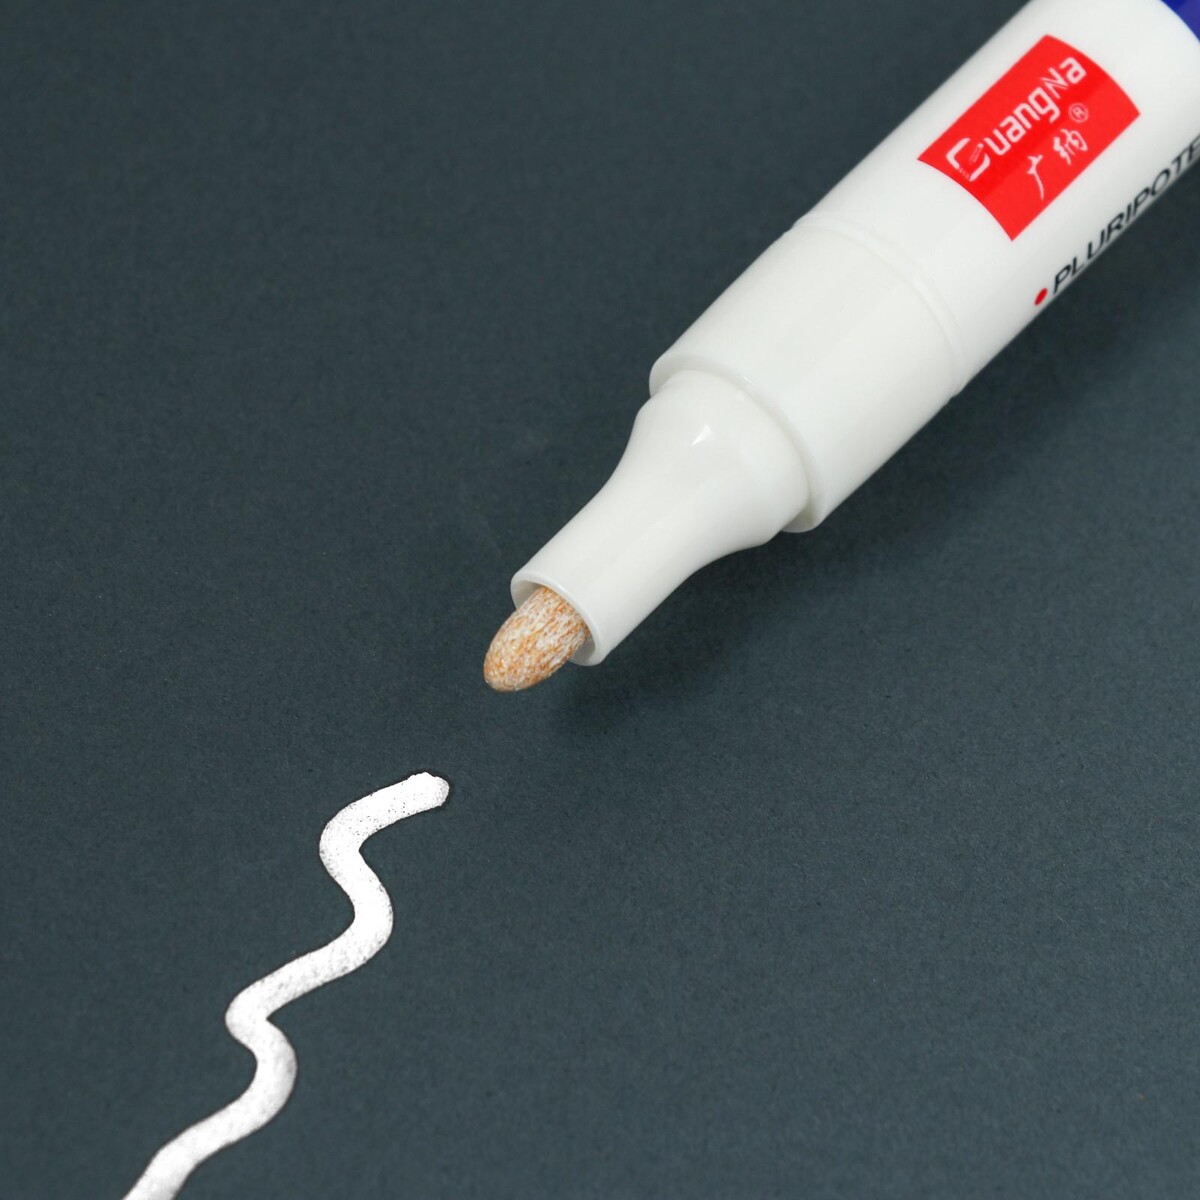 Маркер - карандаш, краска для шин водонепроницаемая на масляной основе, белый ручка маркер для разметки по коже белый